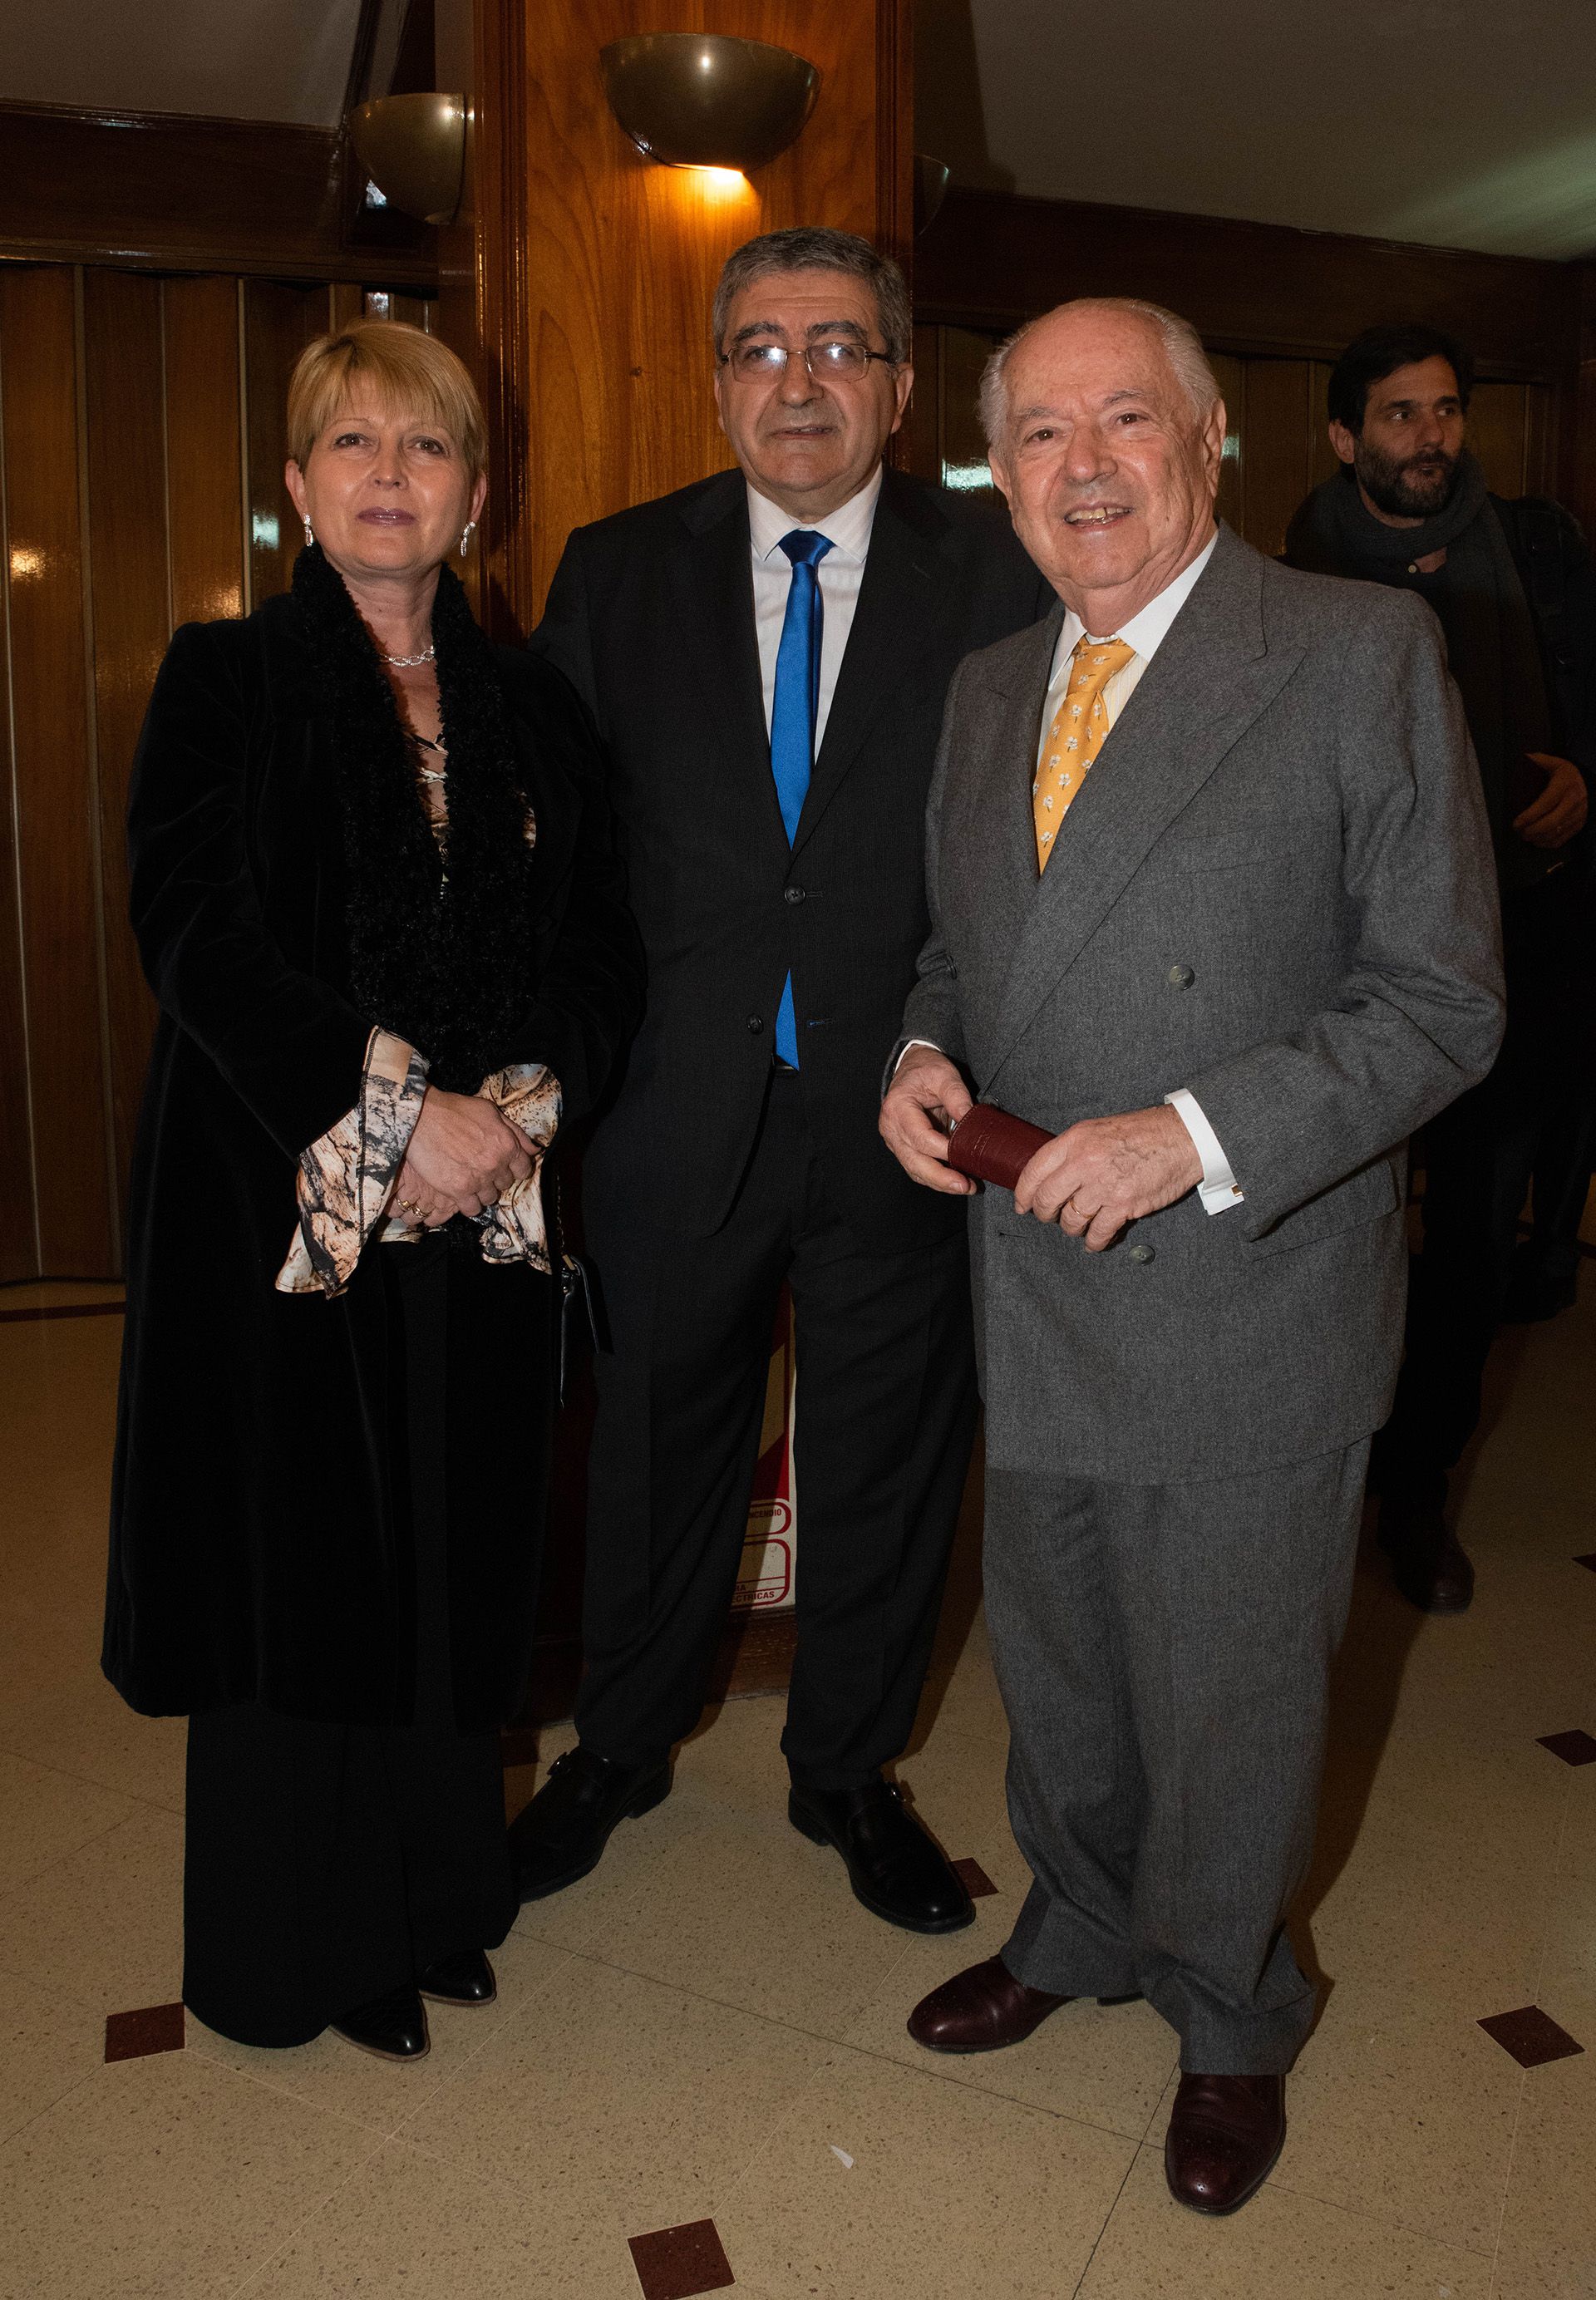 Miguel Ortiz Pellegrini, convencional constituyente, con su esposa y Carlos Corach